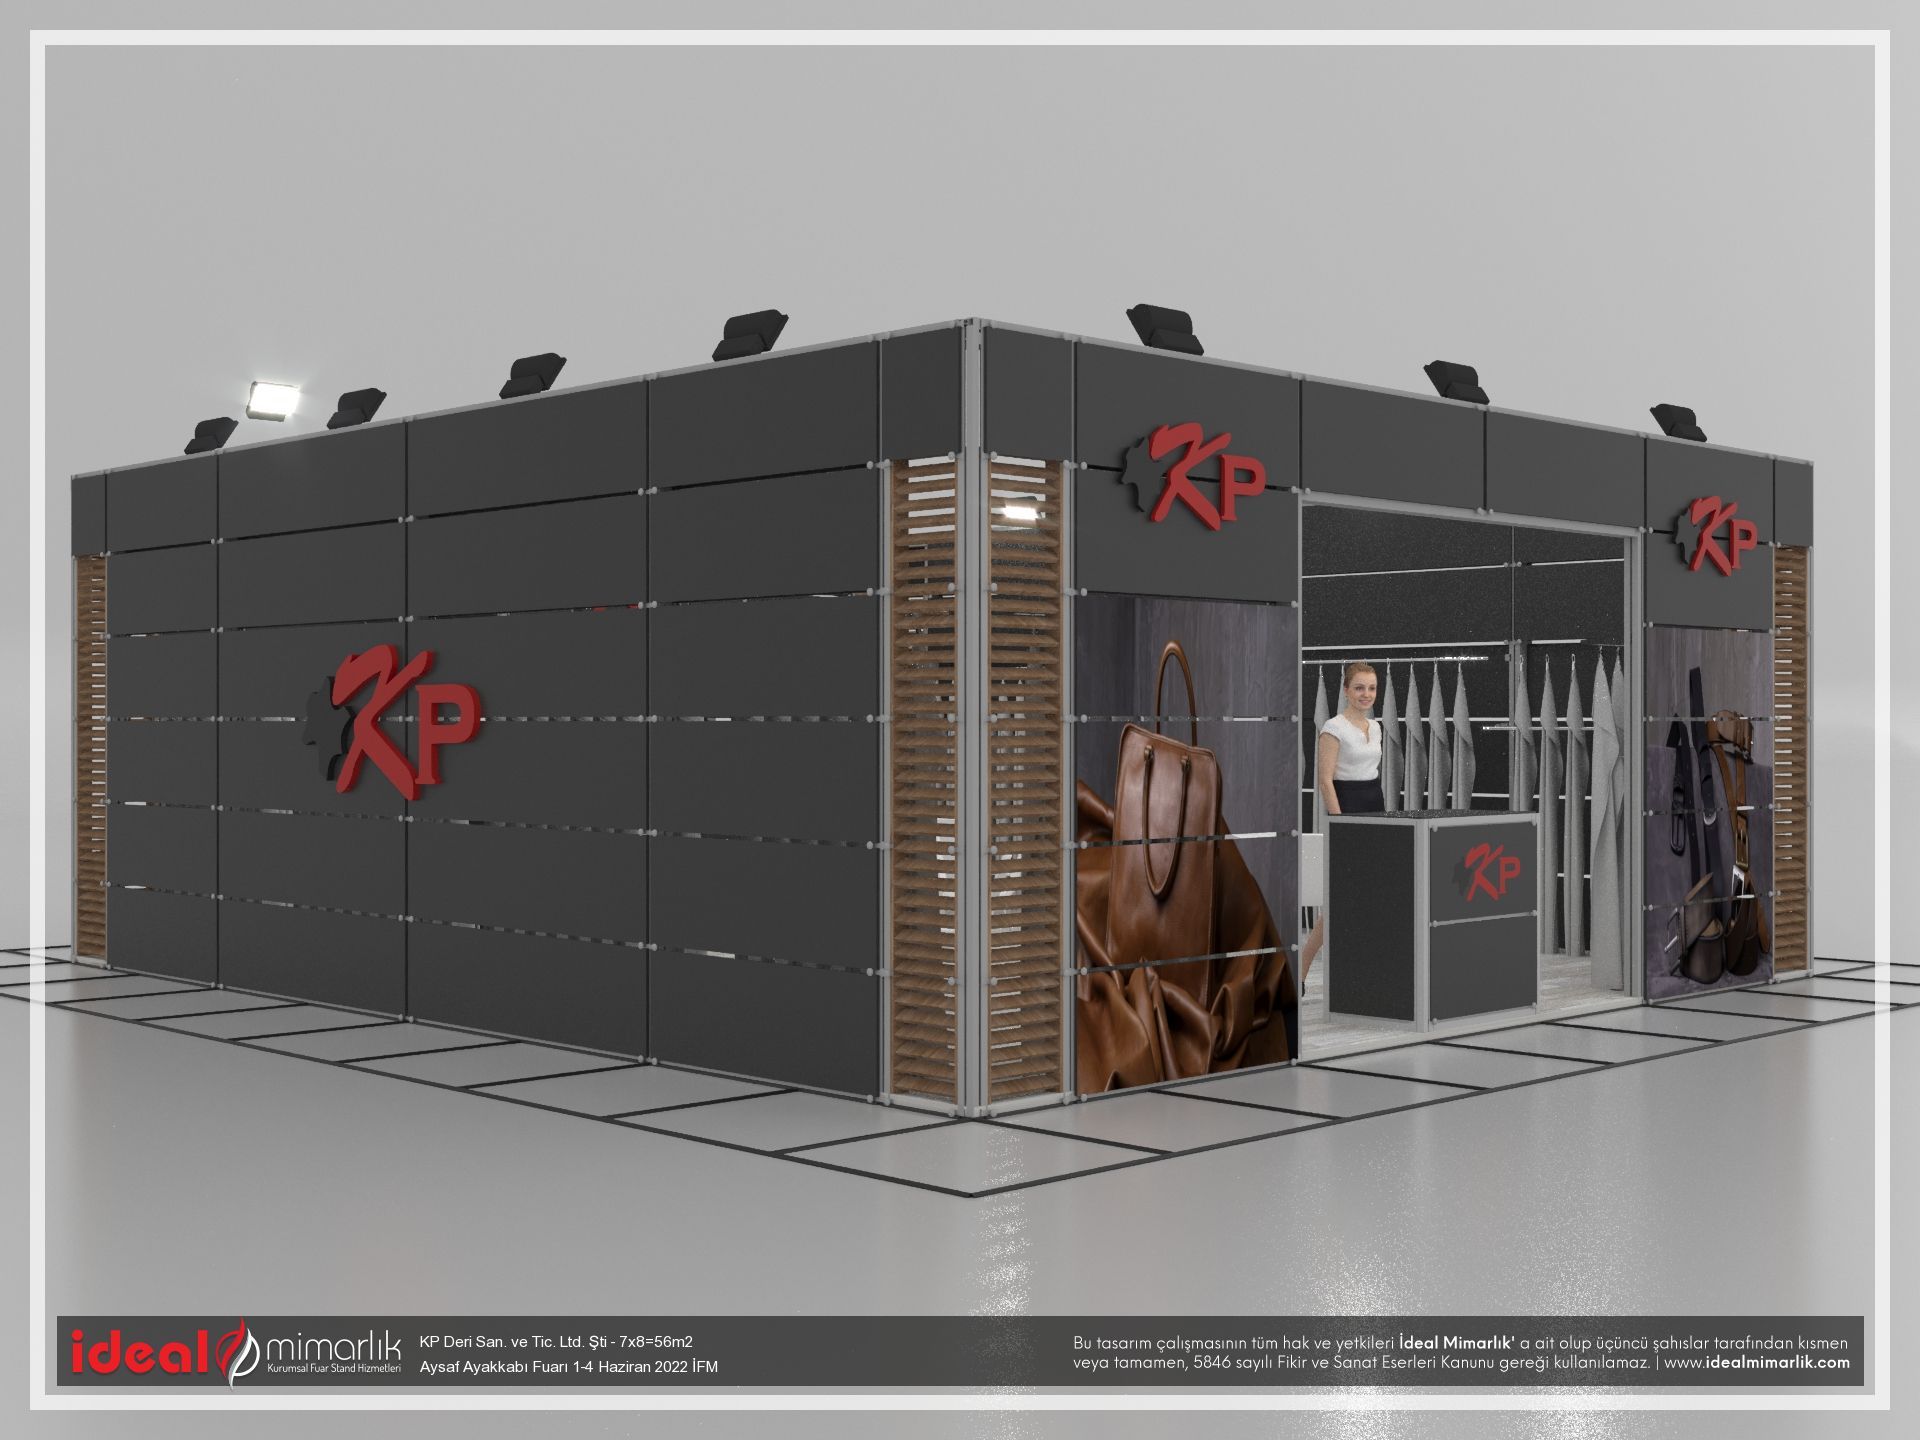 KP Deri San. ve Tic. Ltd. Şti |Aysaf Ayakkabı Fuarı 1-4 Haziran 2022 İFM